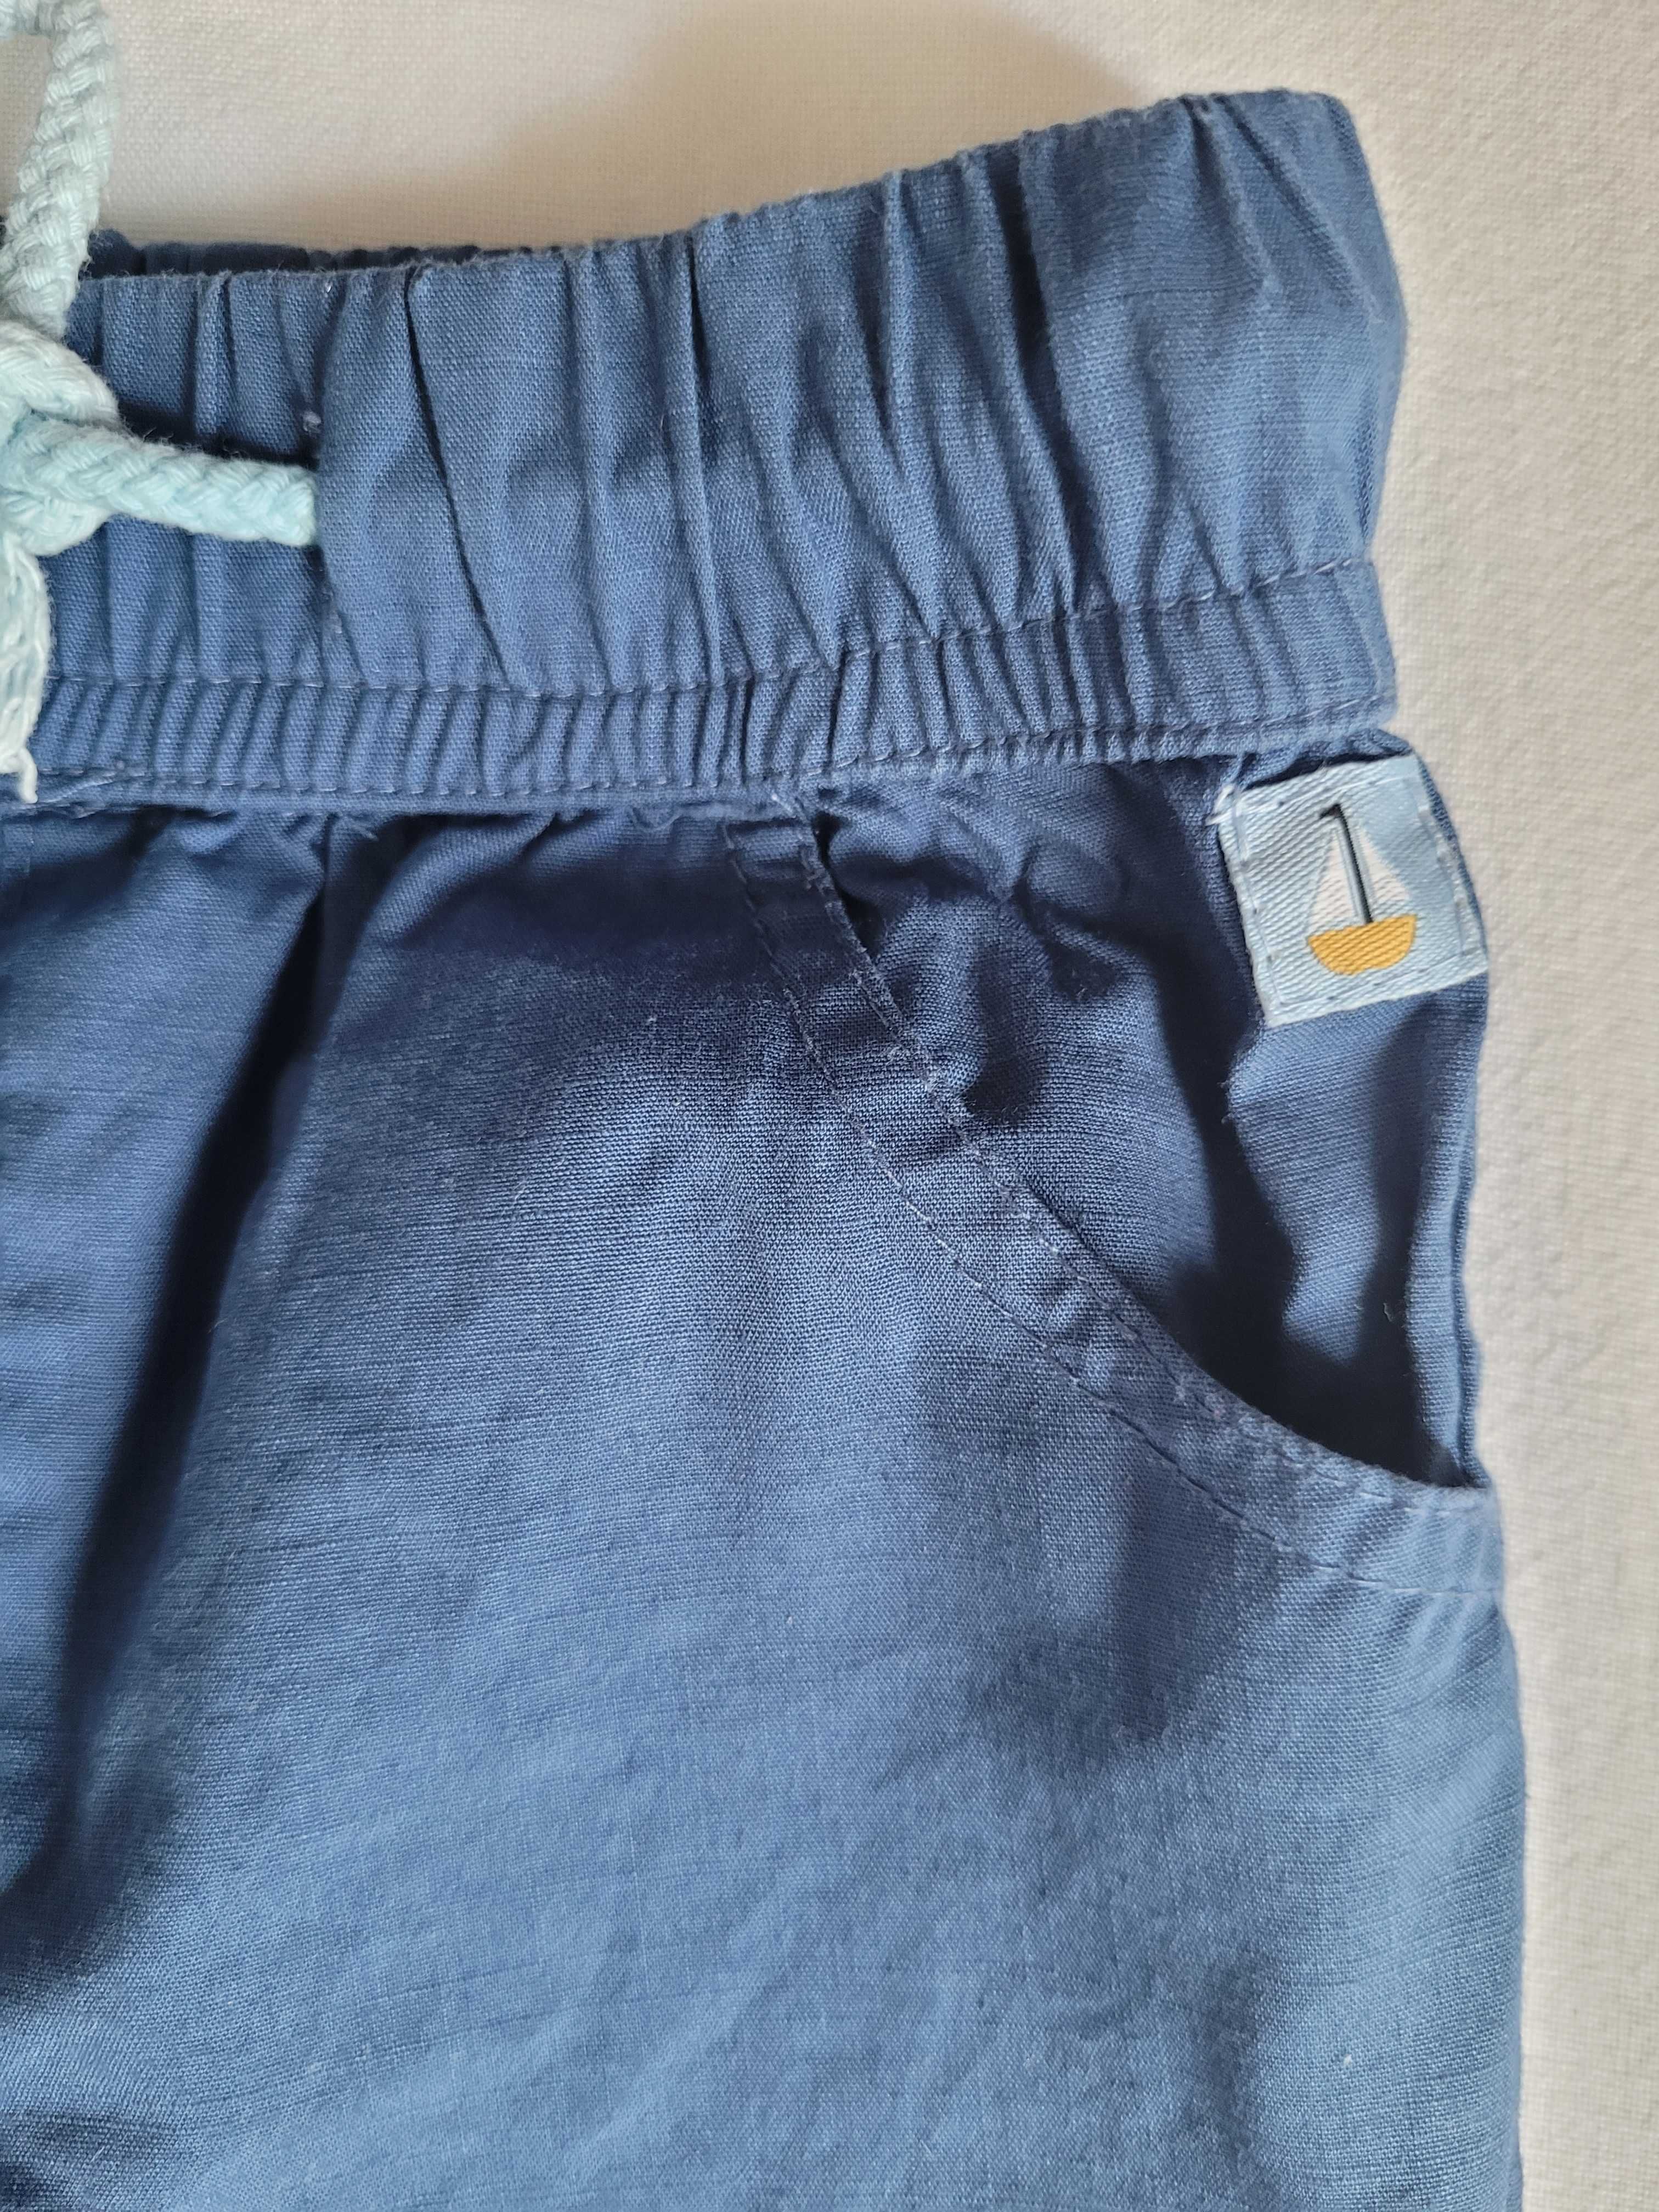 Niebieskie bawełniane spodnie niemowlęce r.68